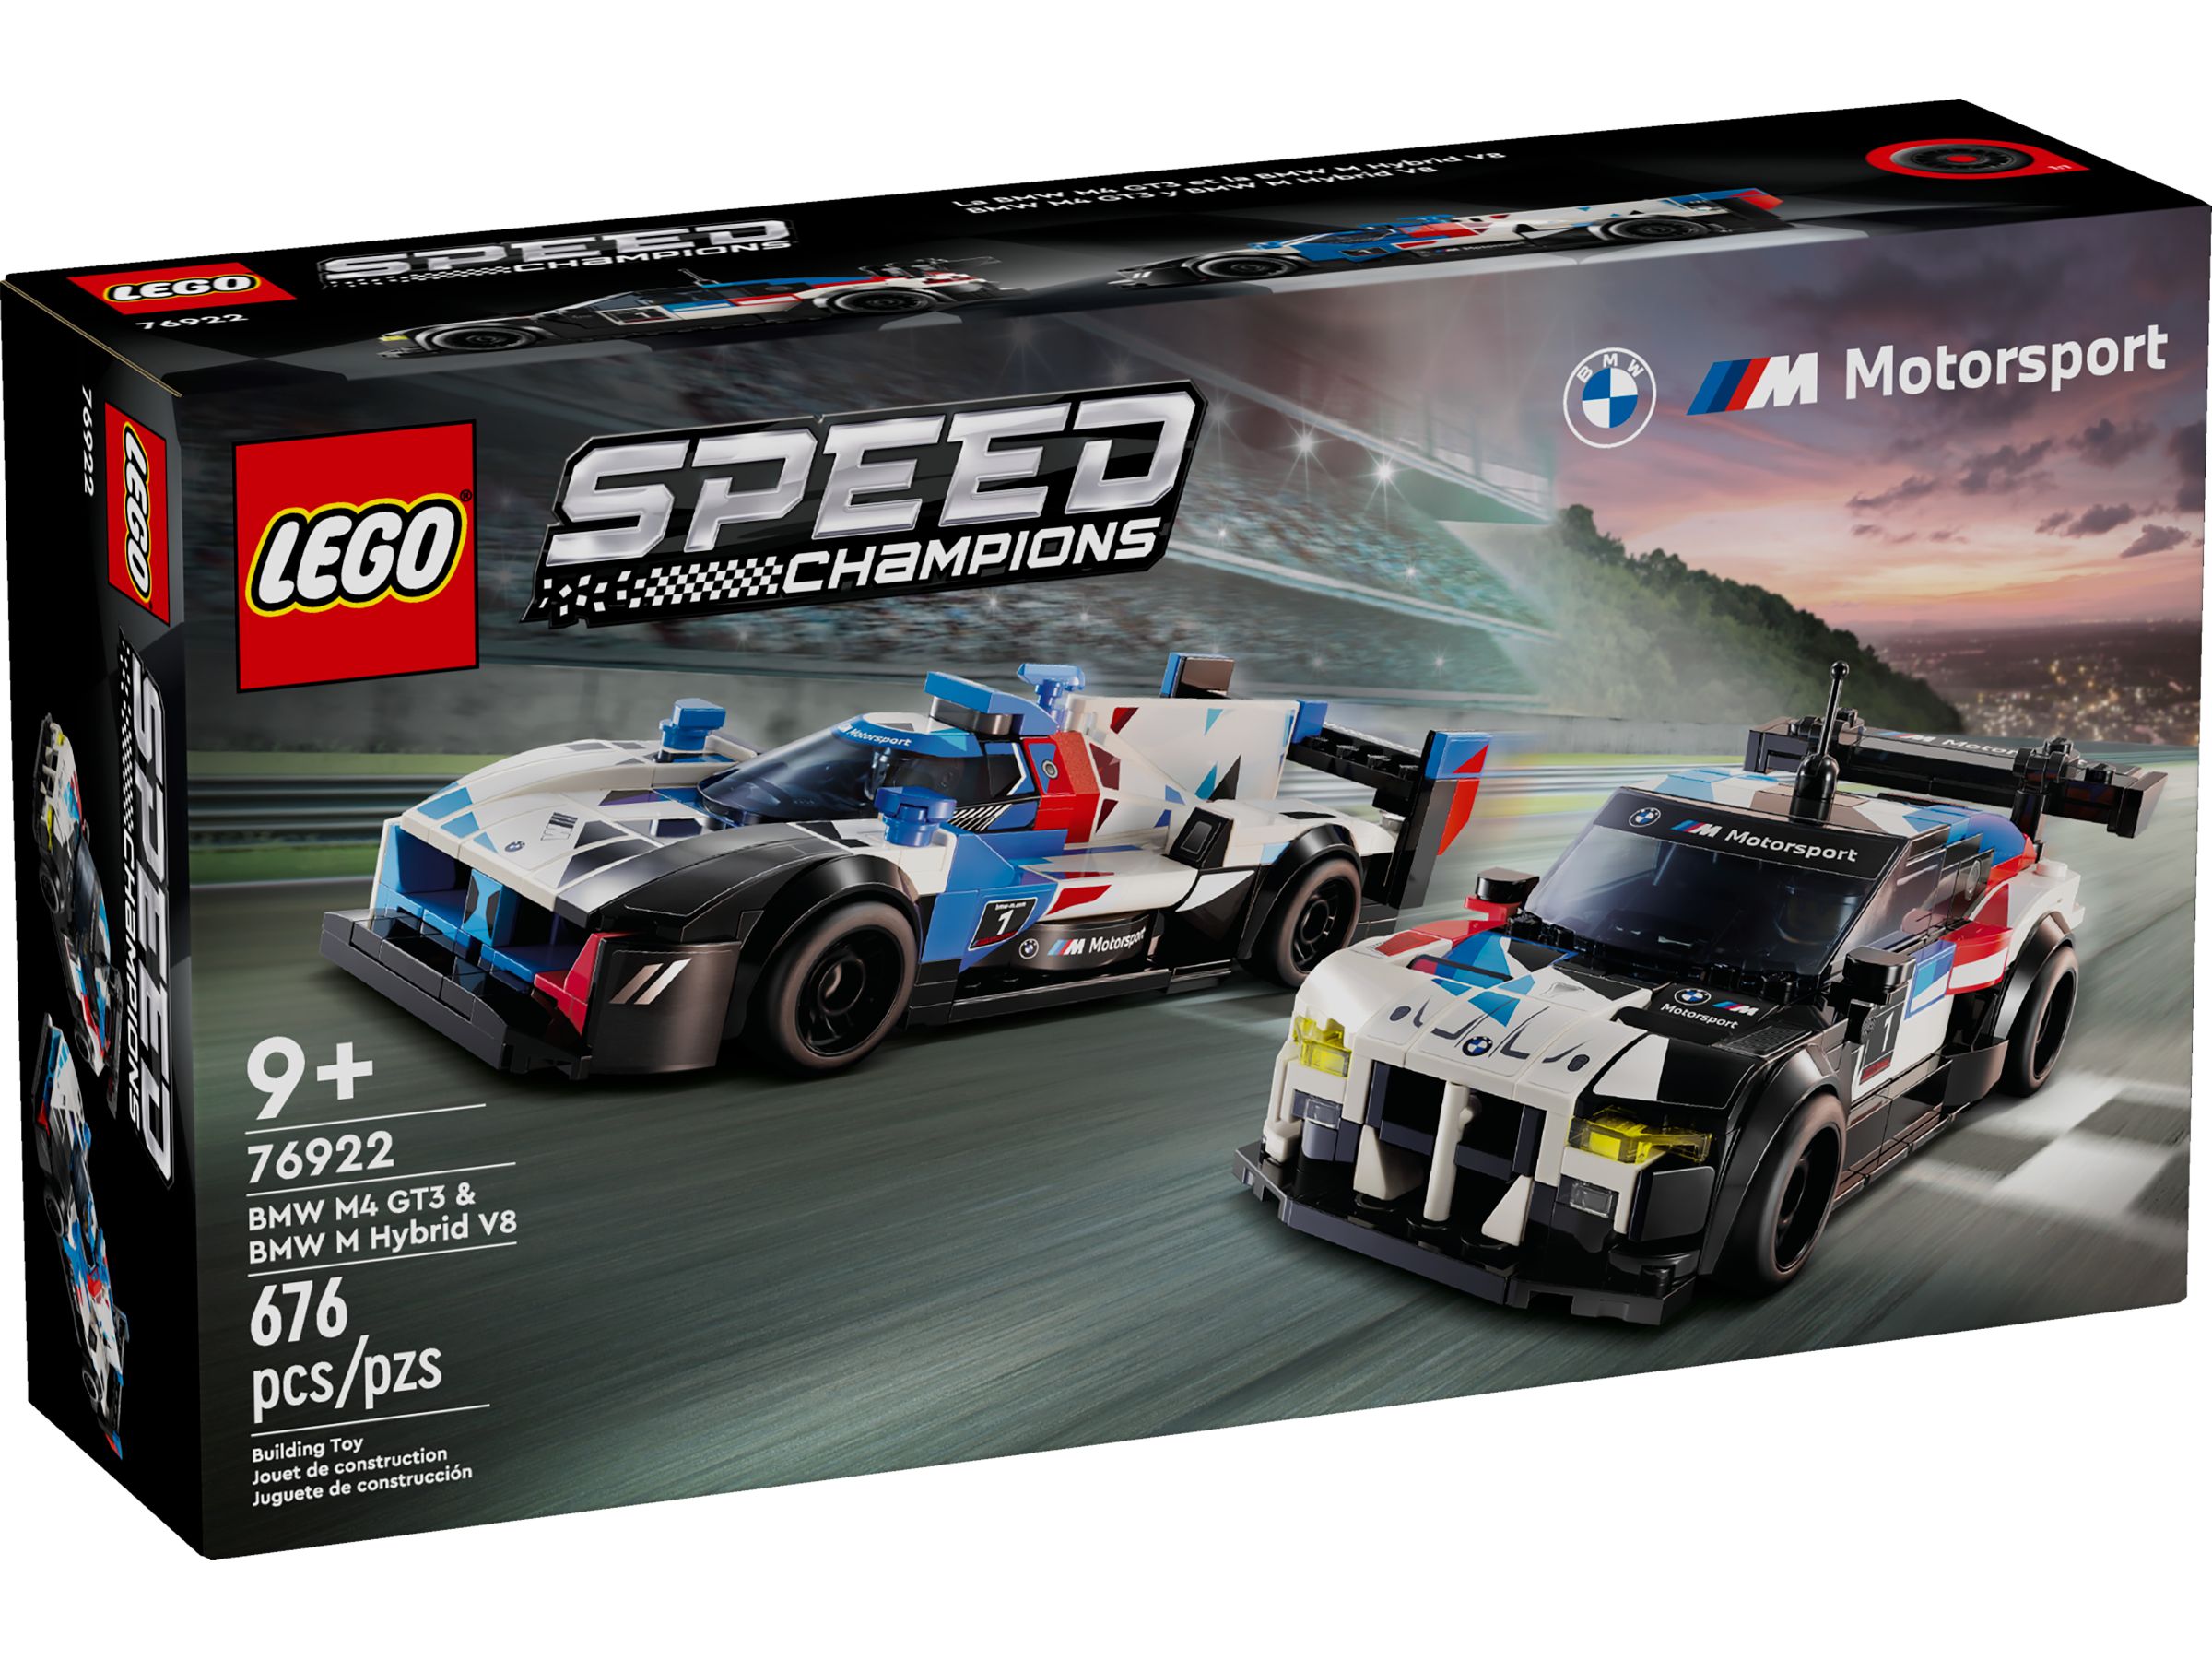 LEGO Speed Champions 76922 BMW M4 GT3 & BMW M Hybrid V8 Rennwagen LEGO_76922_Box1_v39.jpg